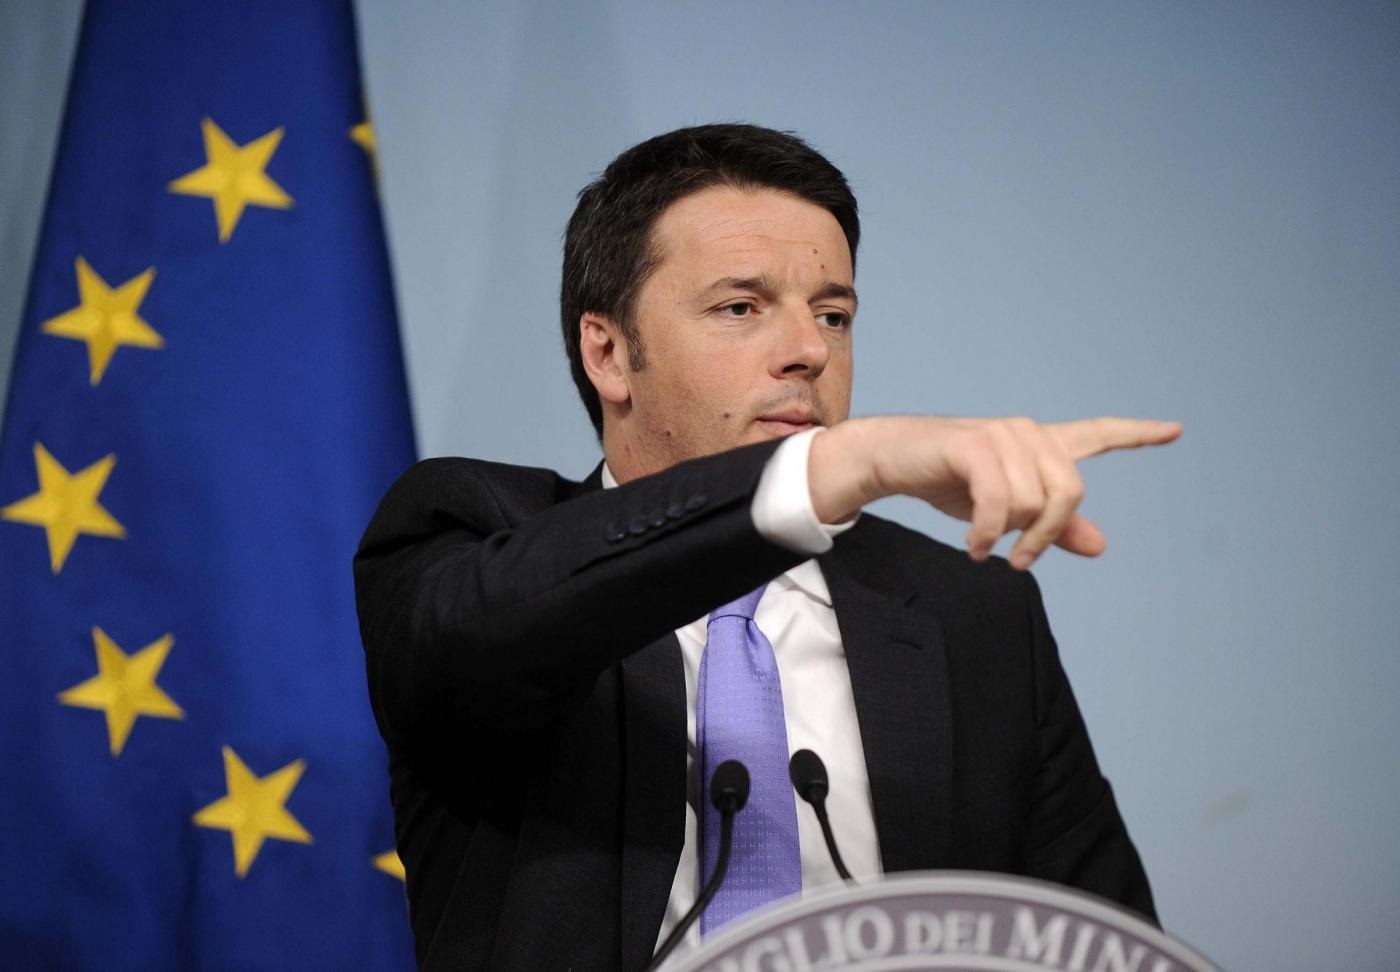  Europa, Renzi: “puntare alla crescita e non solo all’austerity”